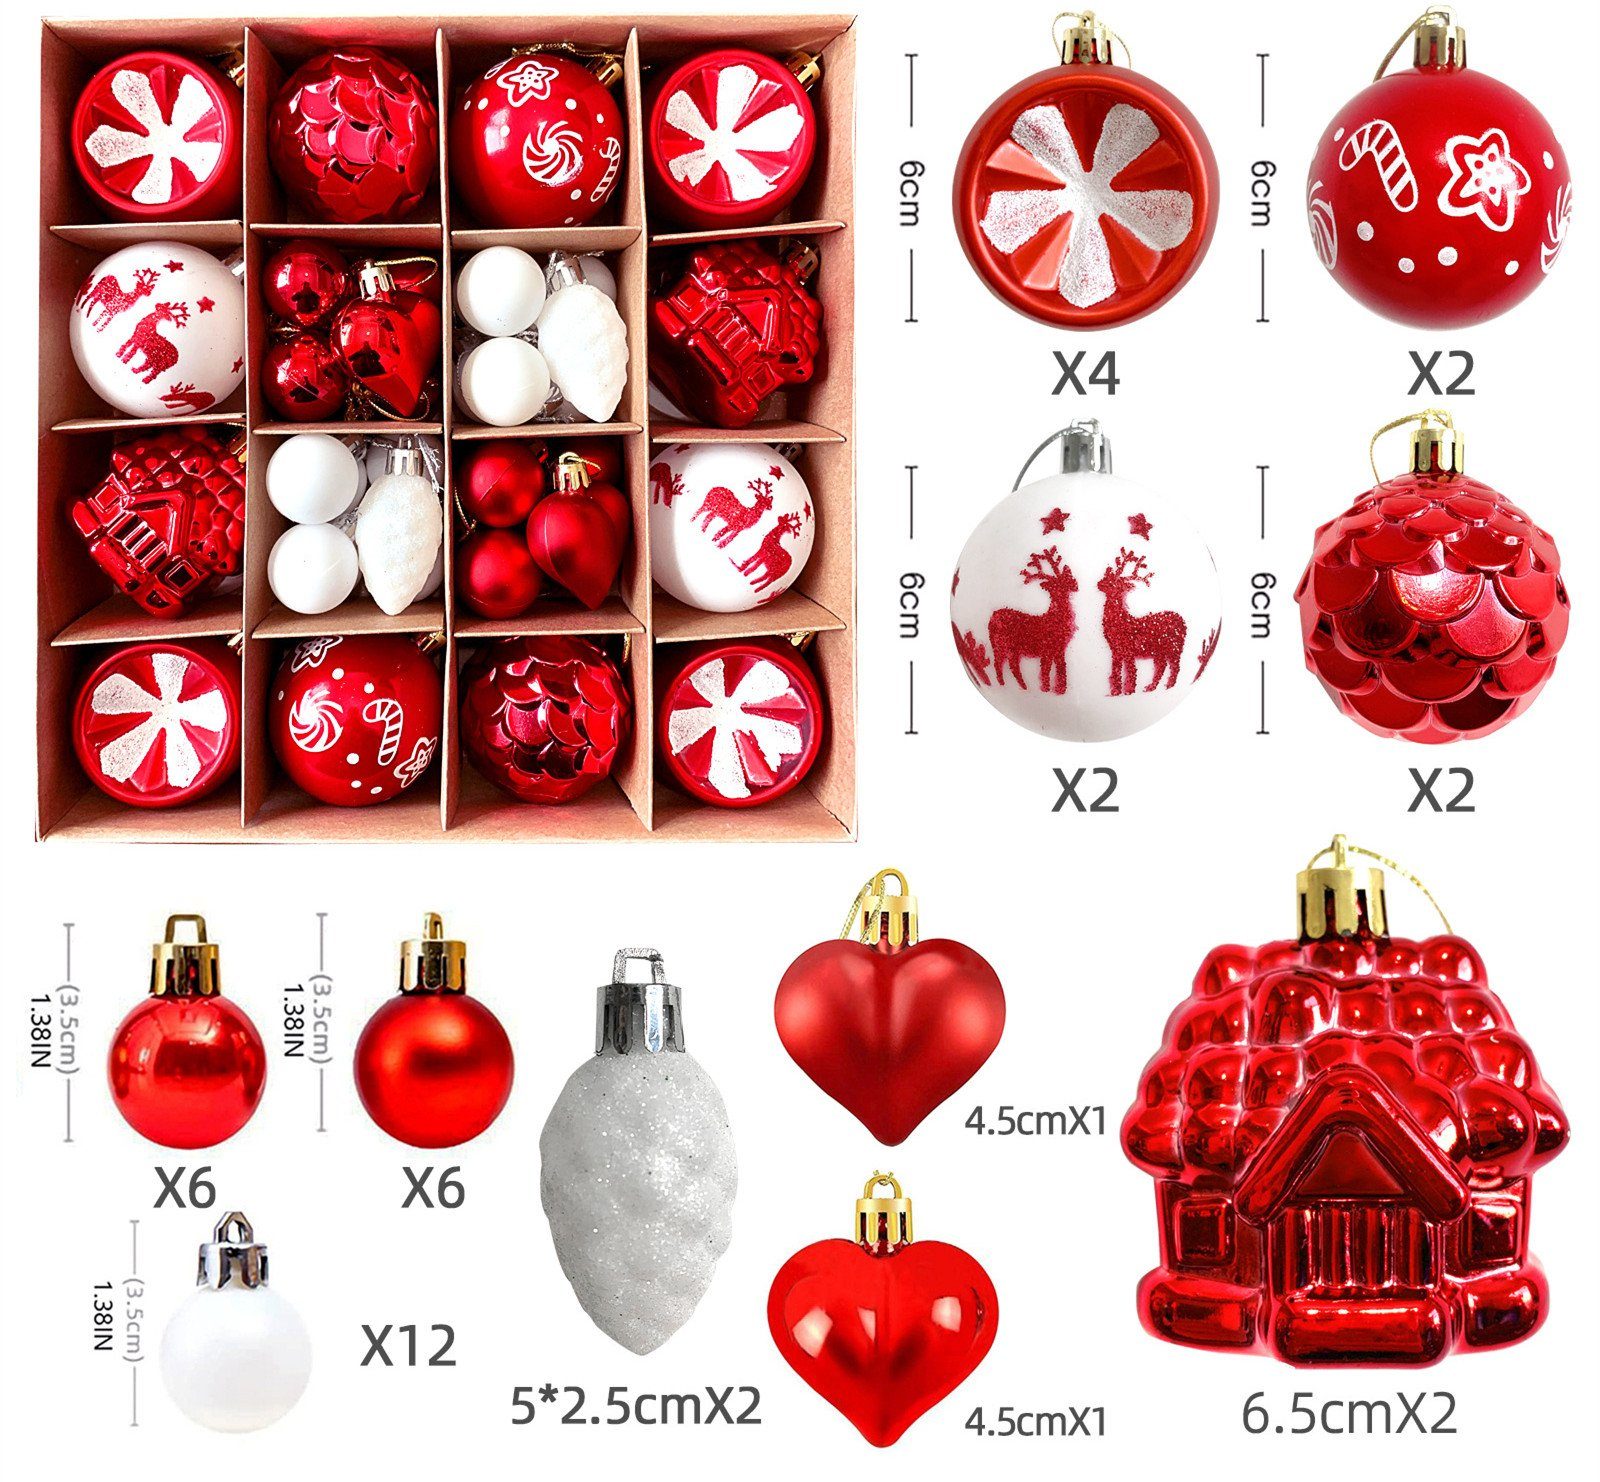 XDeer Weihnachtsbaumkugel Weihnachtskugeln Set, Christbaumkugeln Deko Weihnachten, Weihnachtsbaumschmuck,Weihnachtsbaumkugeln red+white